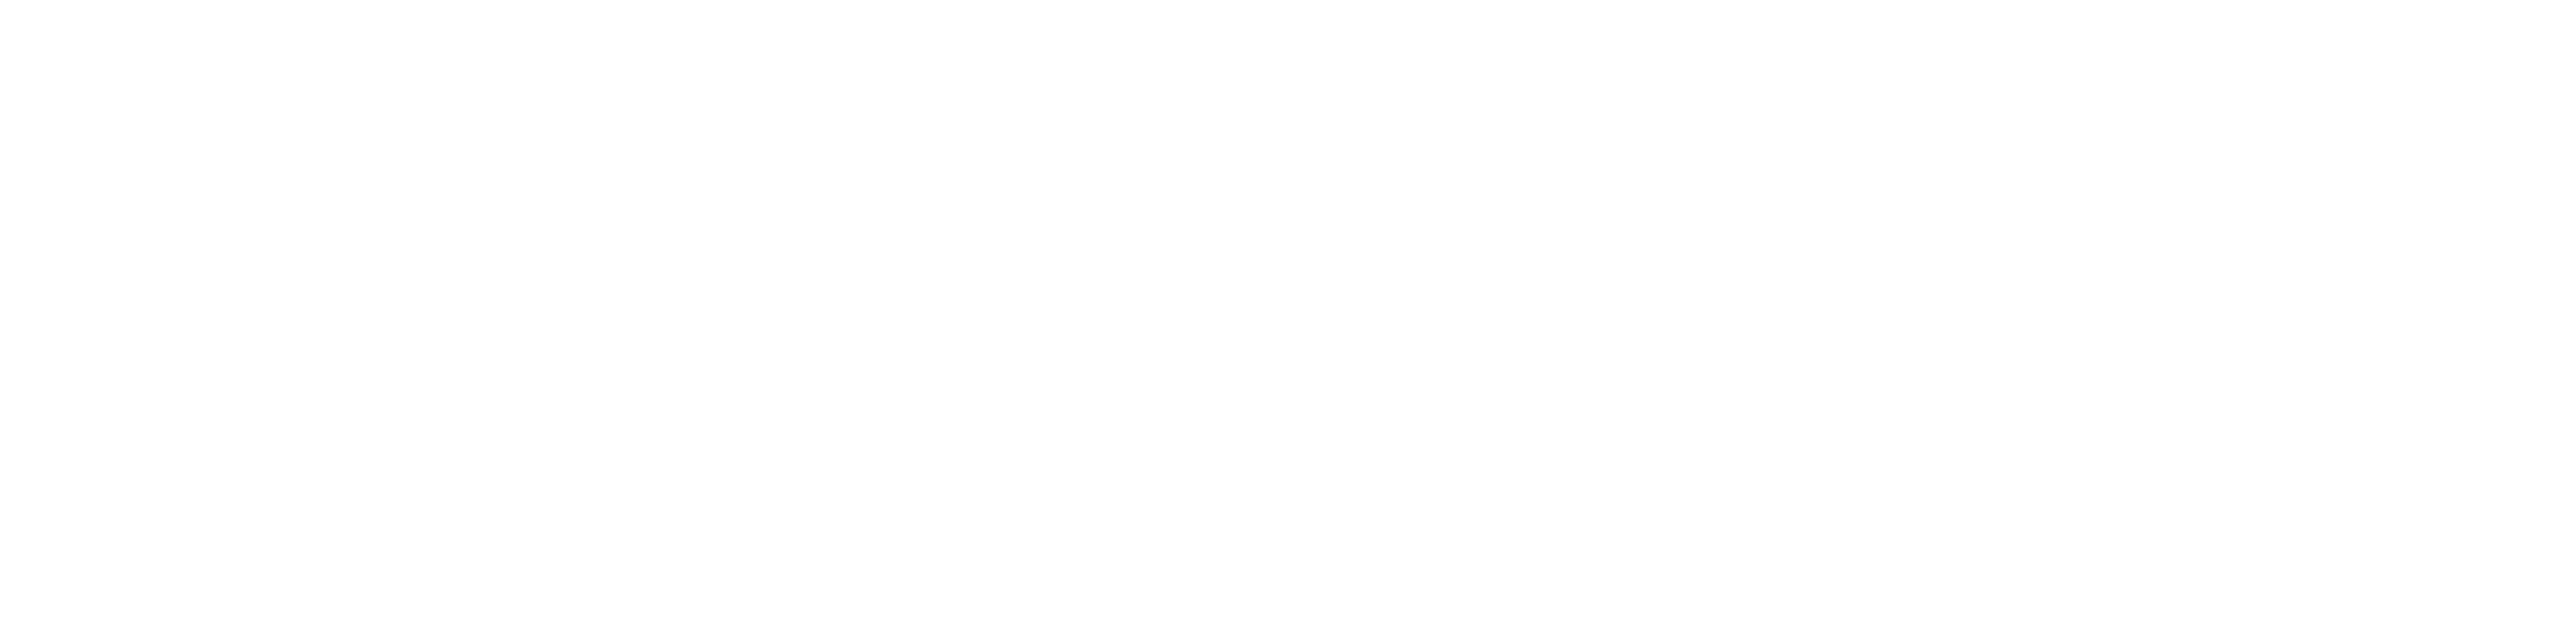 Stiftelsen Yrkeshögskolan Sverige